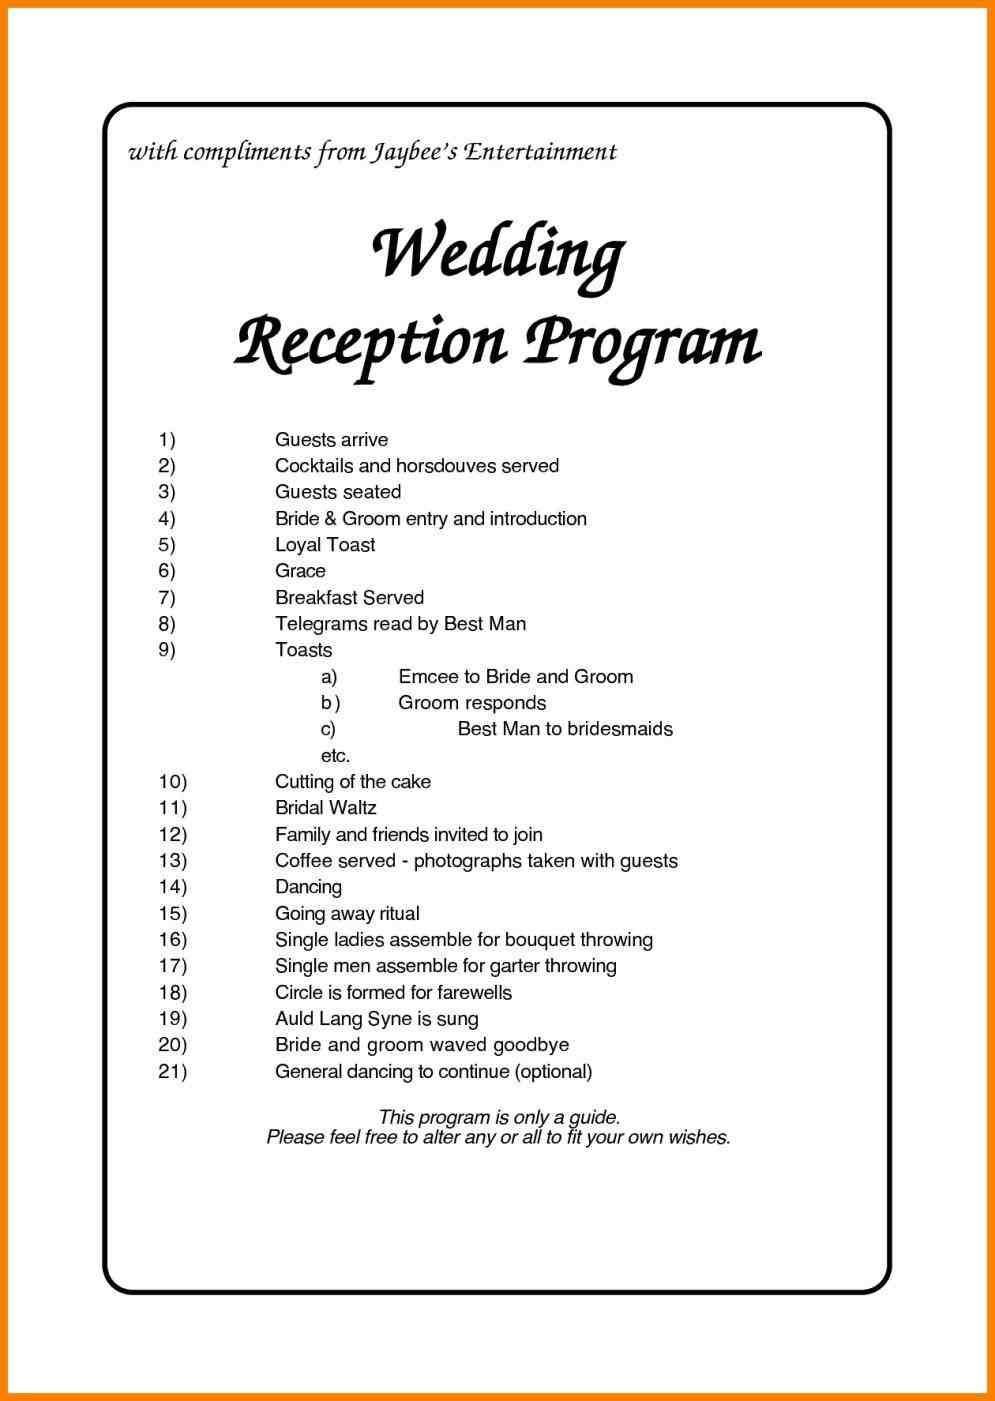 nigerian wedding reception program Weddings